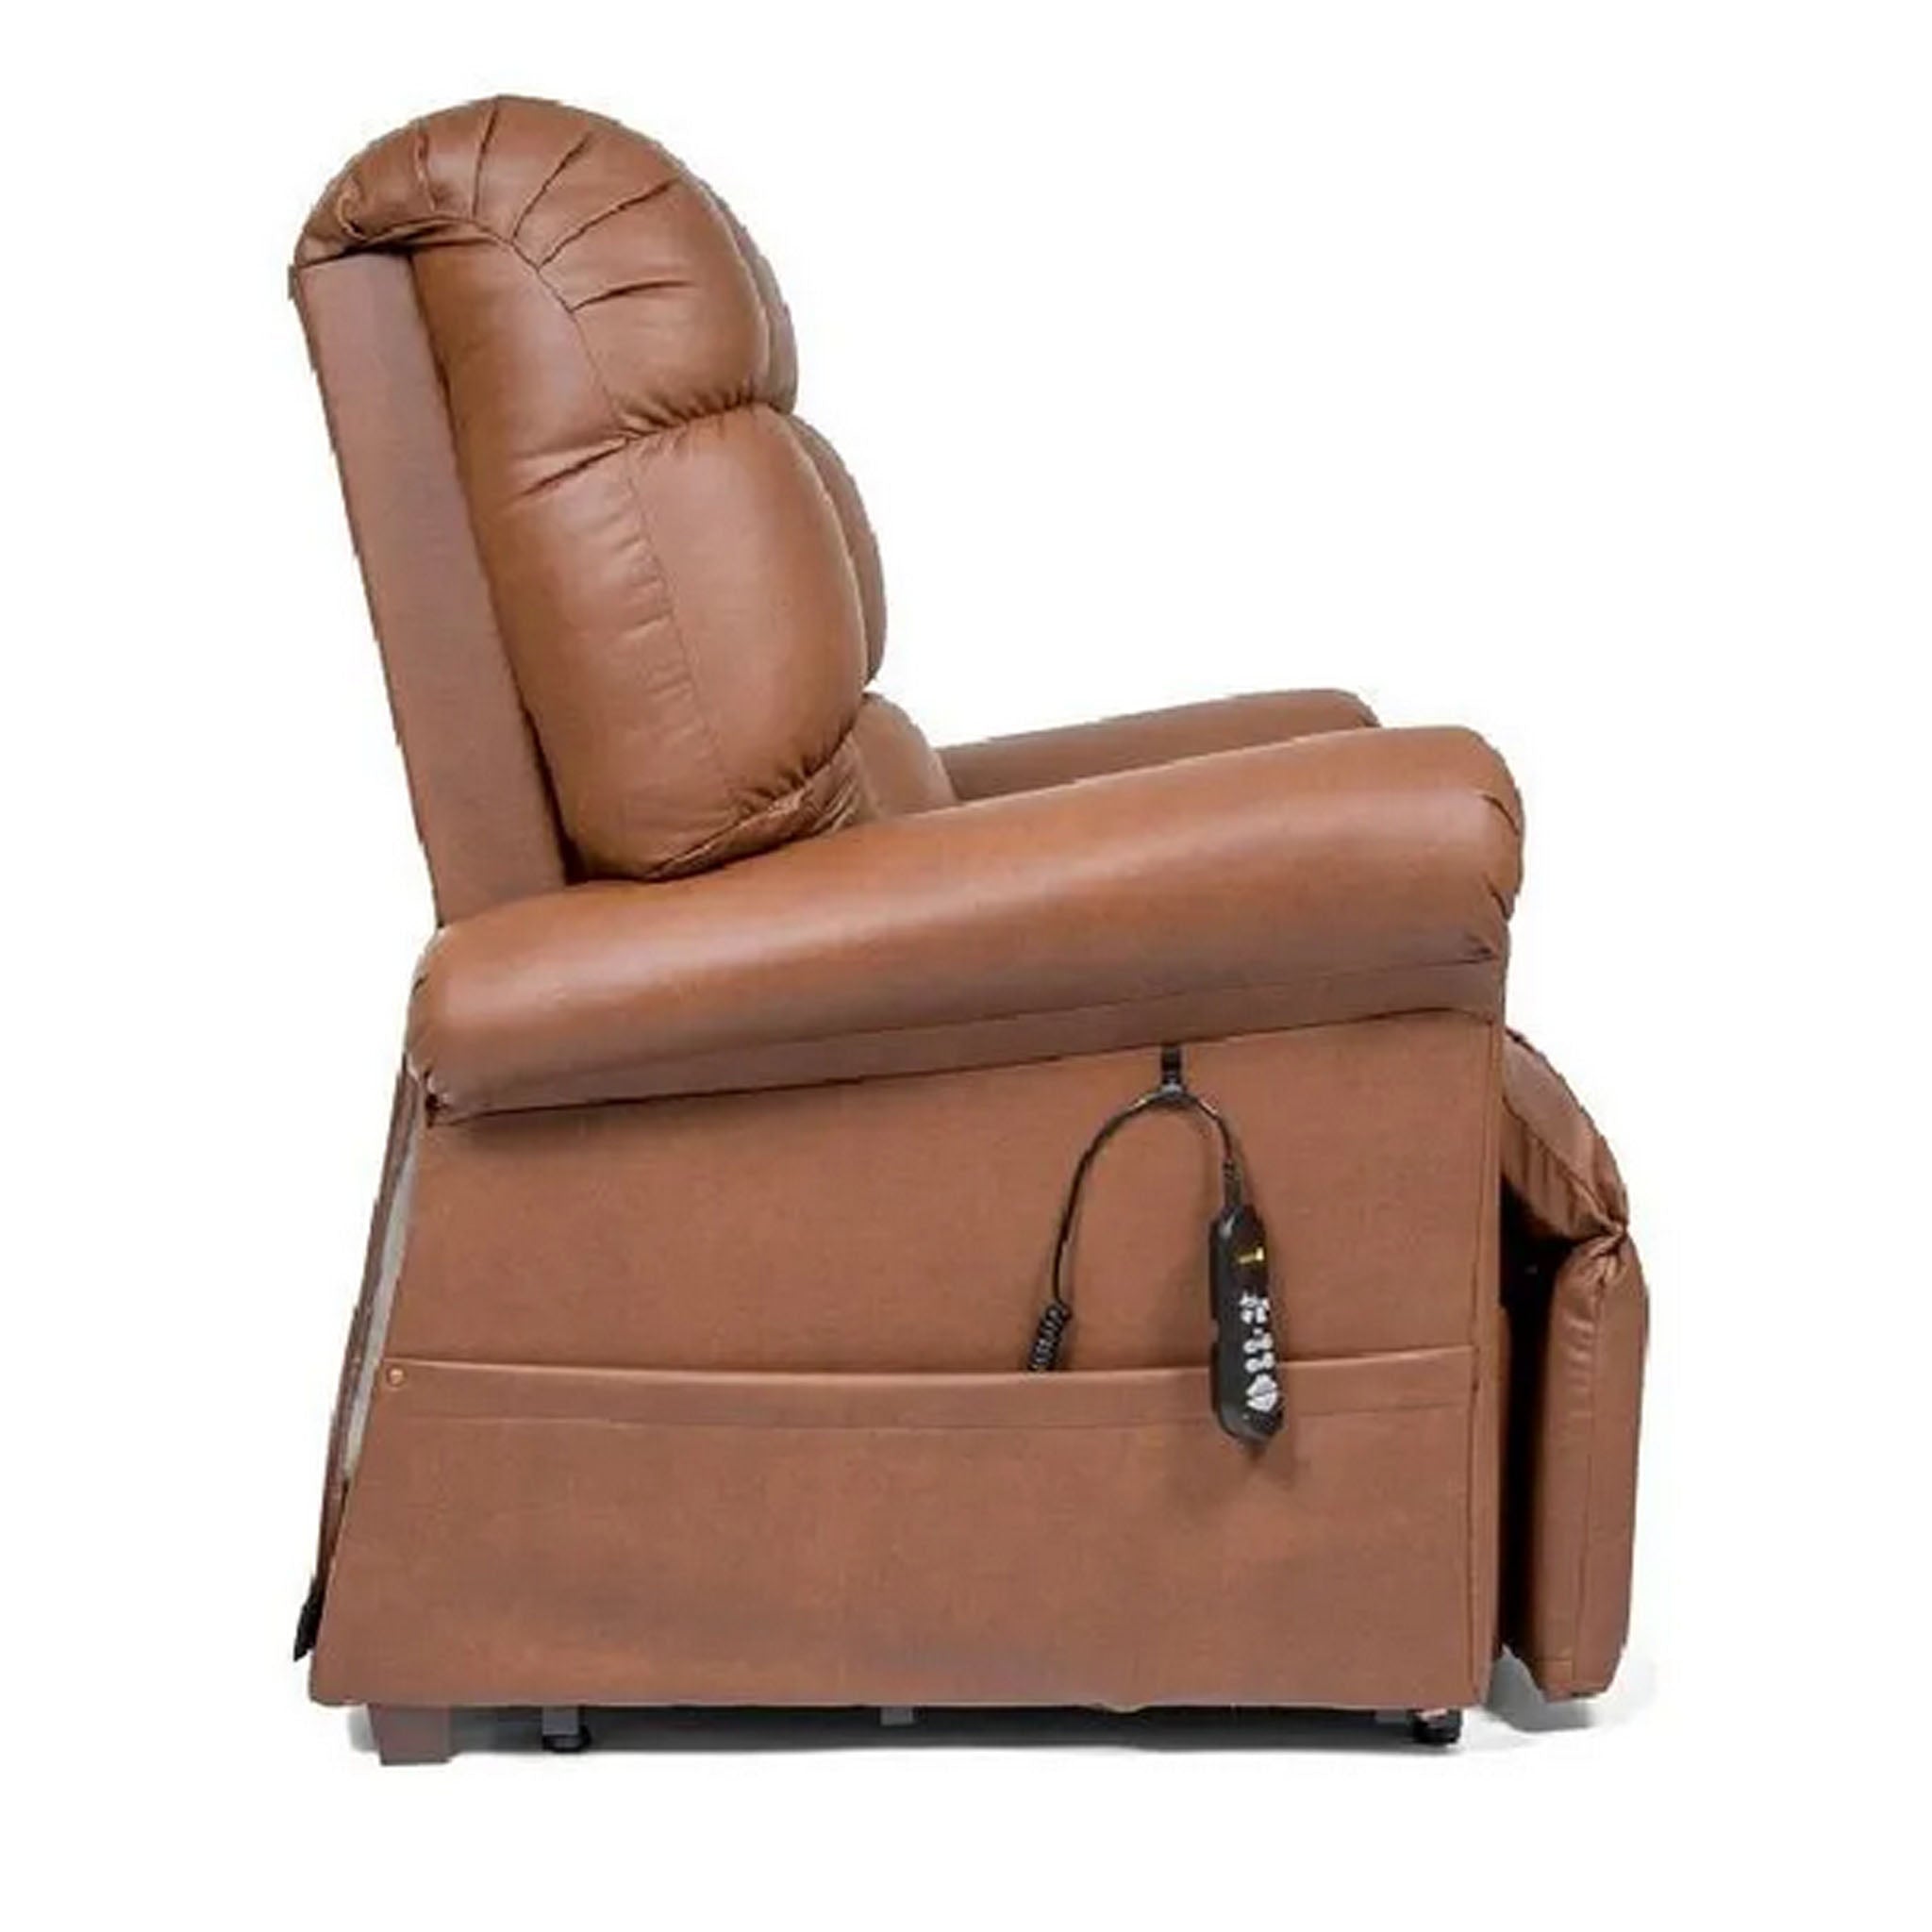 Golden Technologies PR-510 Cloud Lift Chair with MaxiComfort